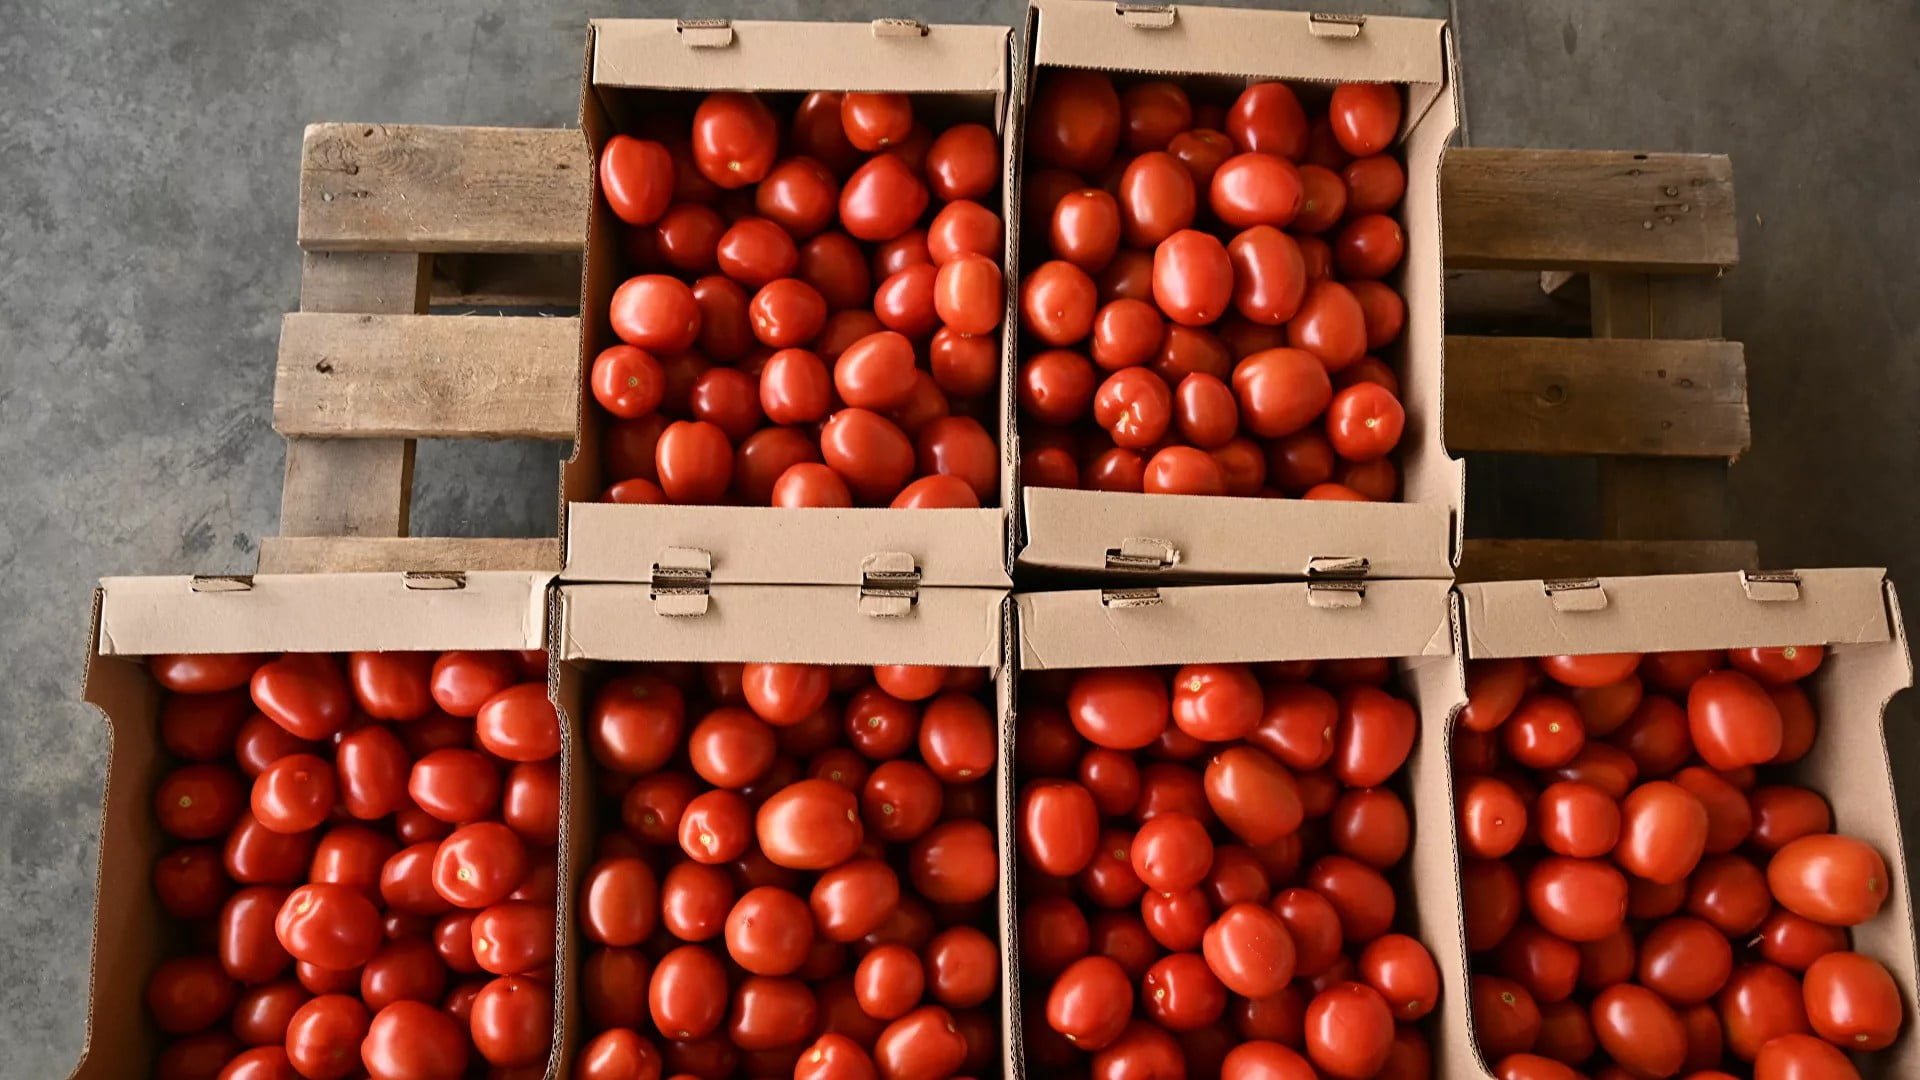 Η Ρωσία εντόπισε ιό σε ντομάτες από την Τουρκία